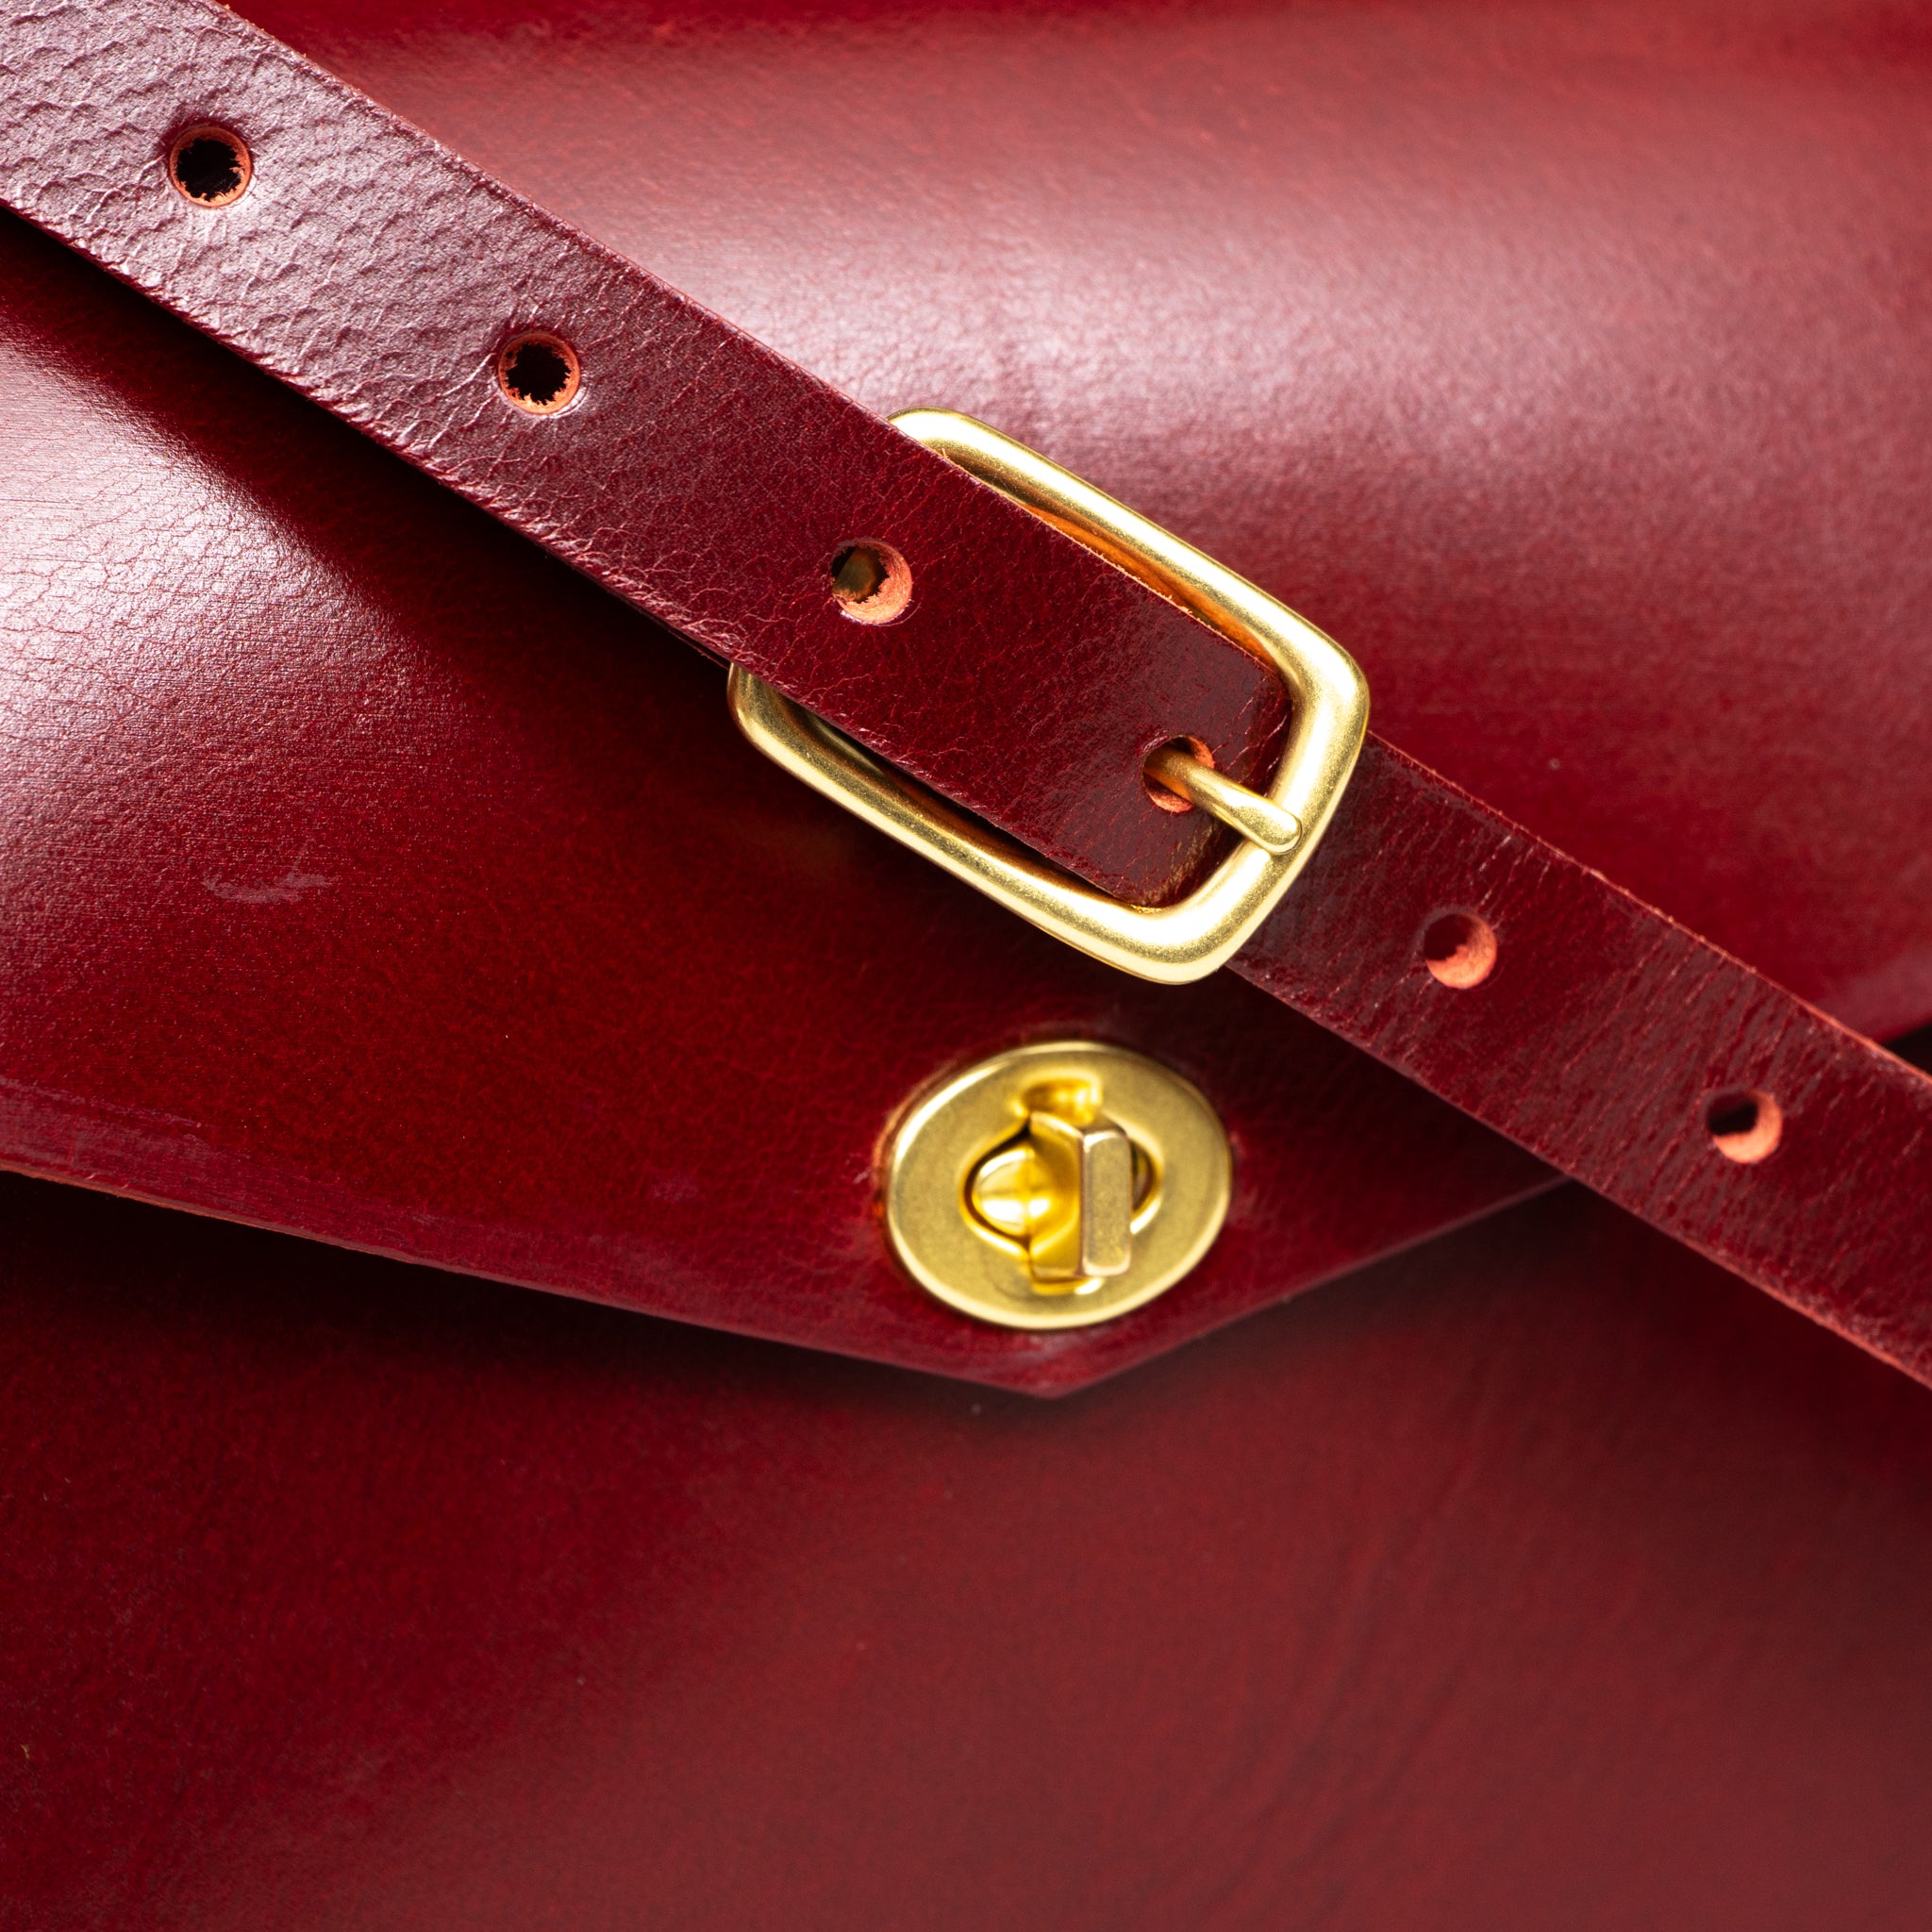 DST Vintage Leather Saddlebag